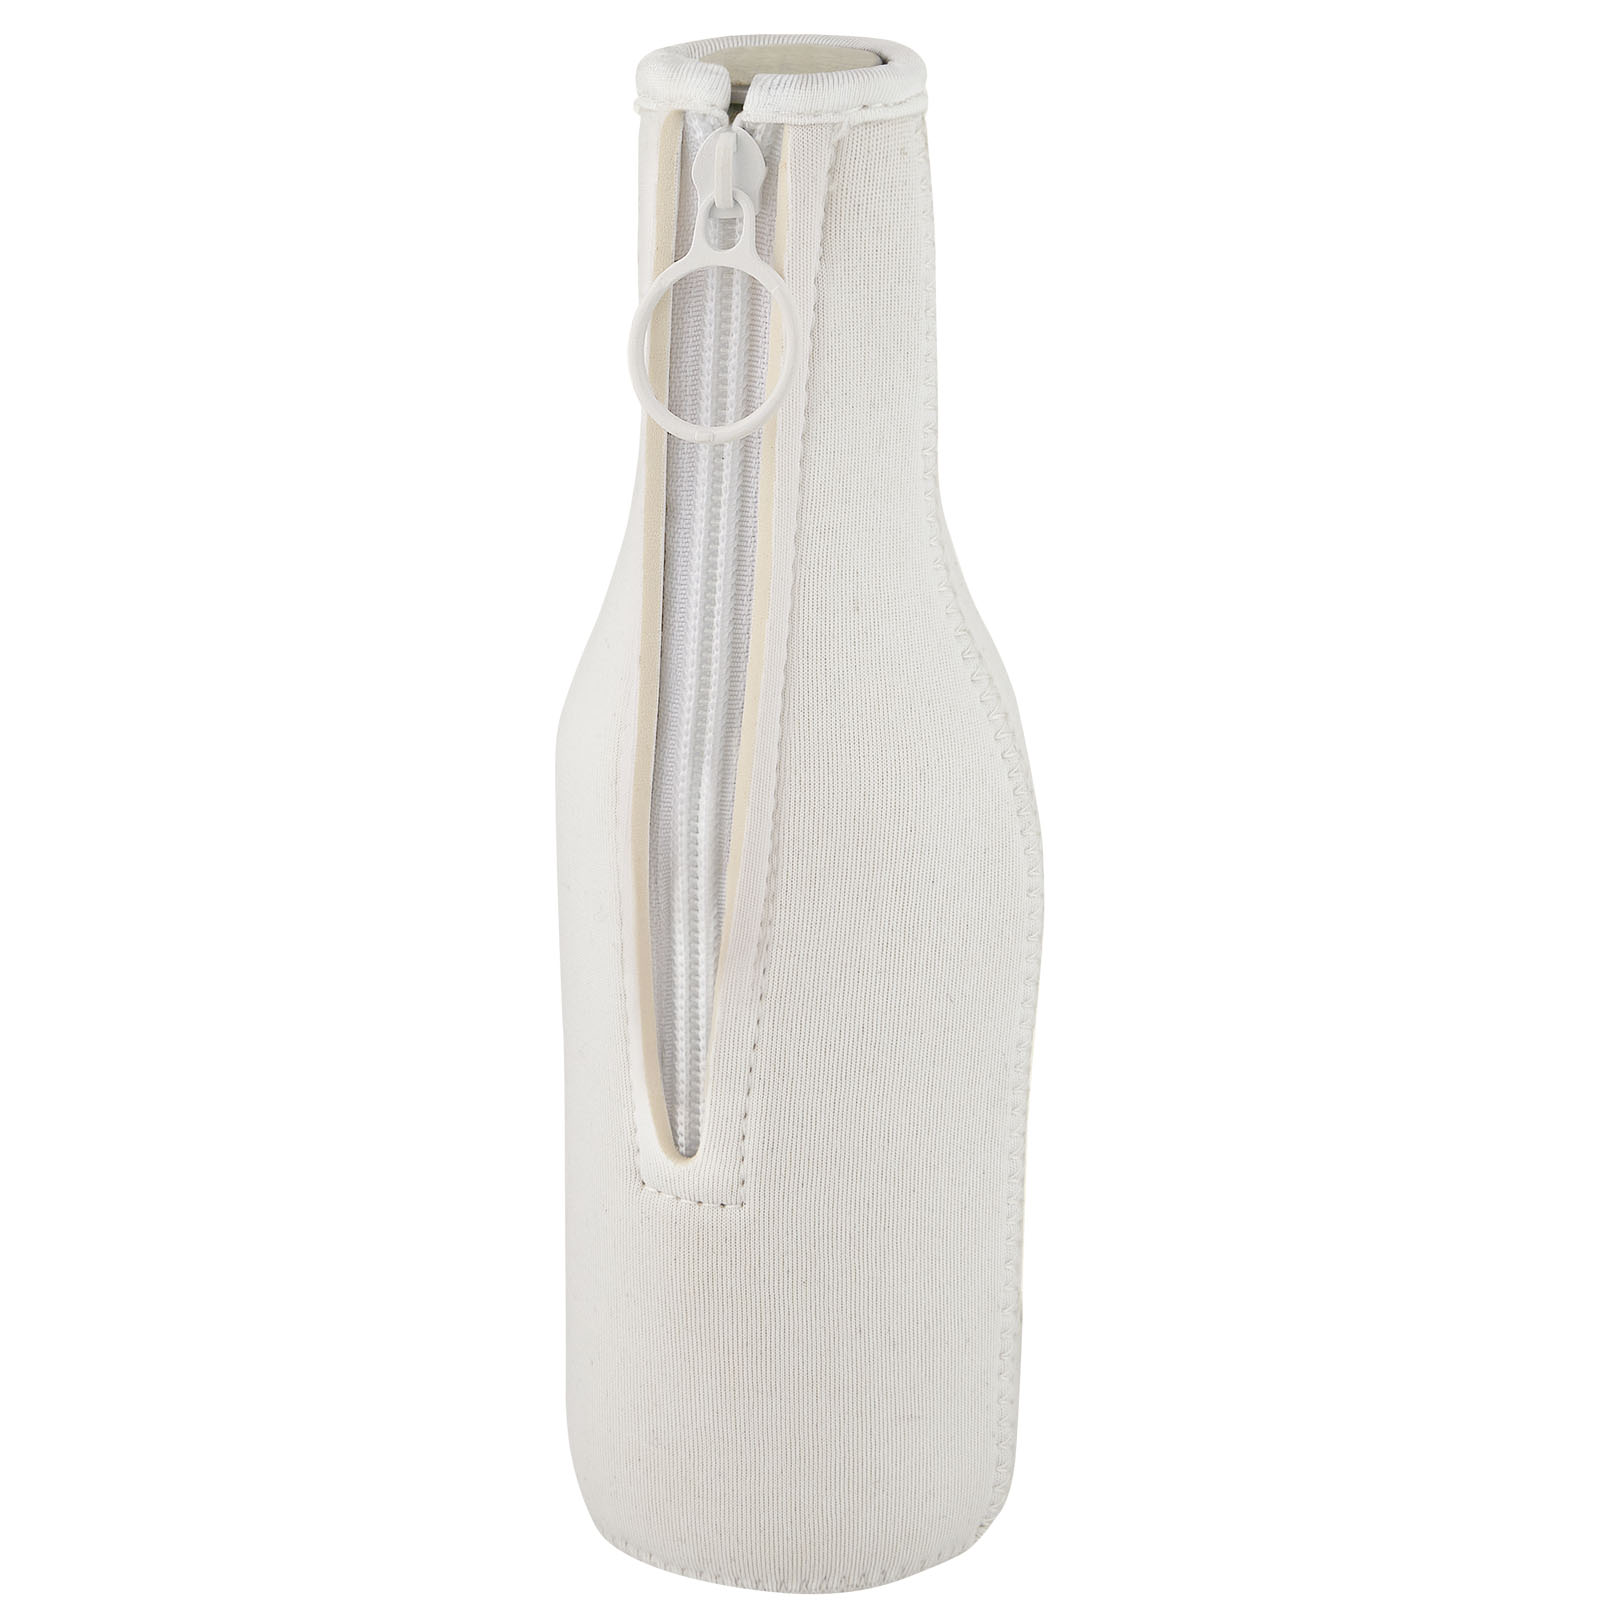 Cooler bags - Fris recycled neoprene bottle sleeve holder